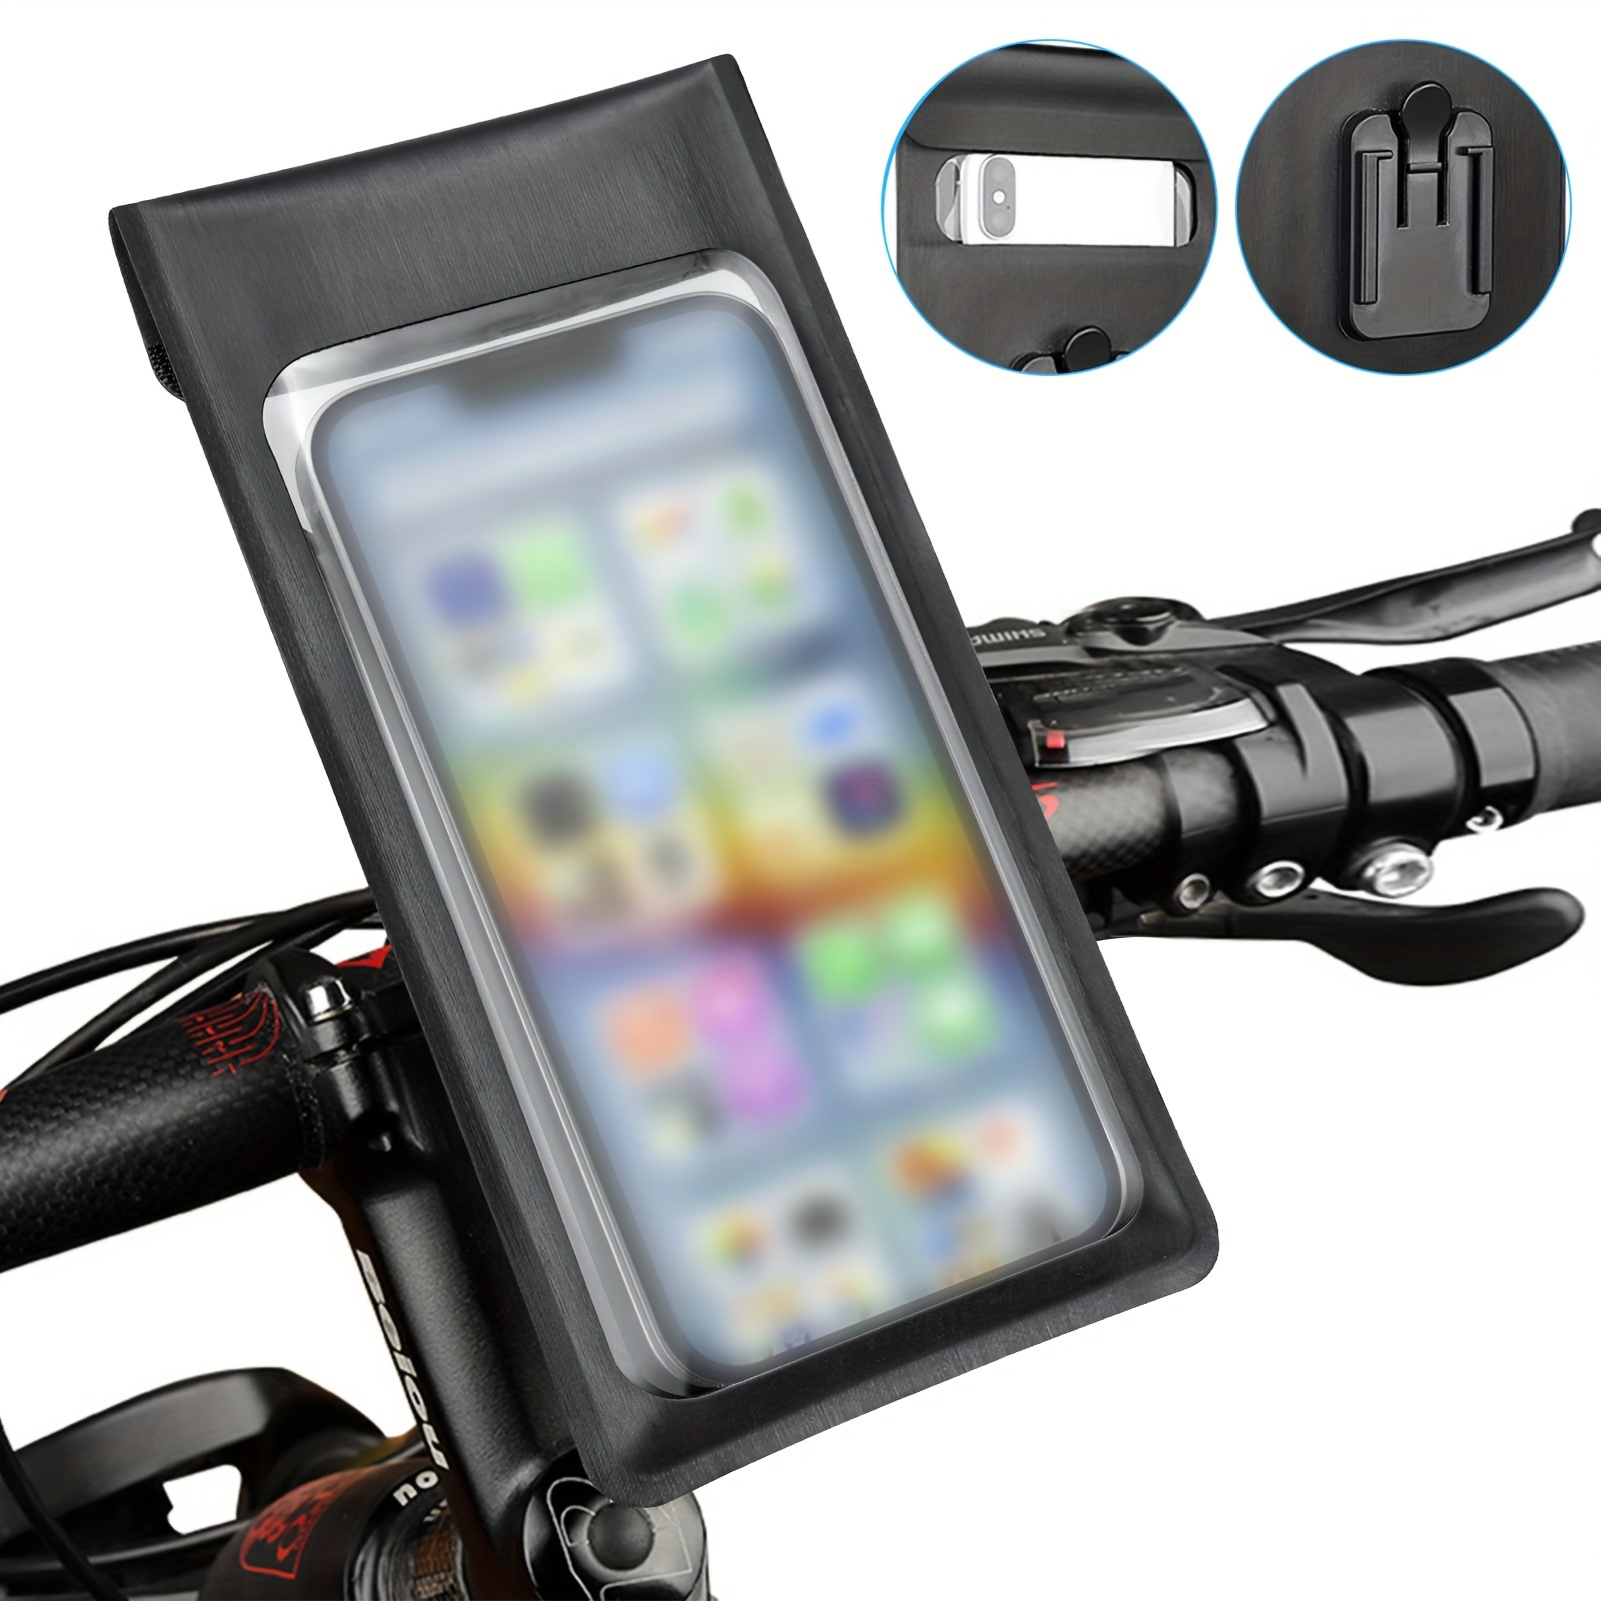 Support smartphone réglable pour vélo, poussette